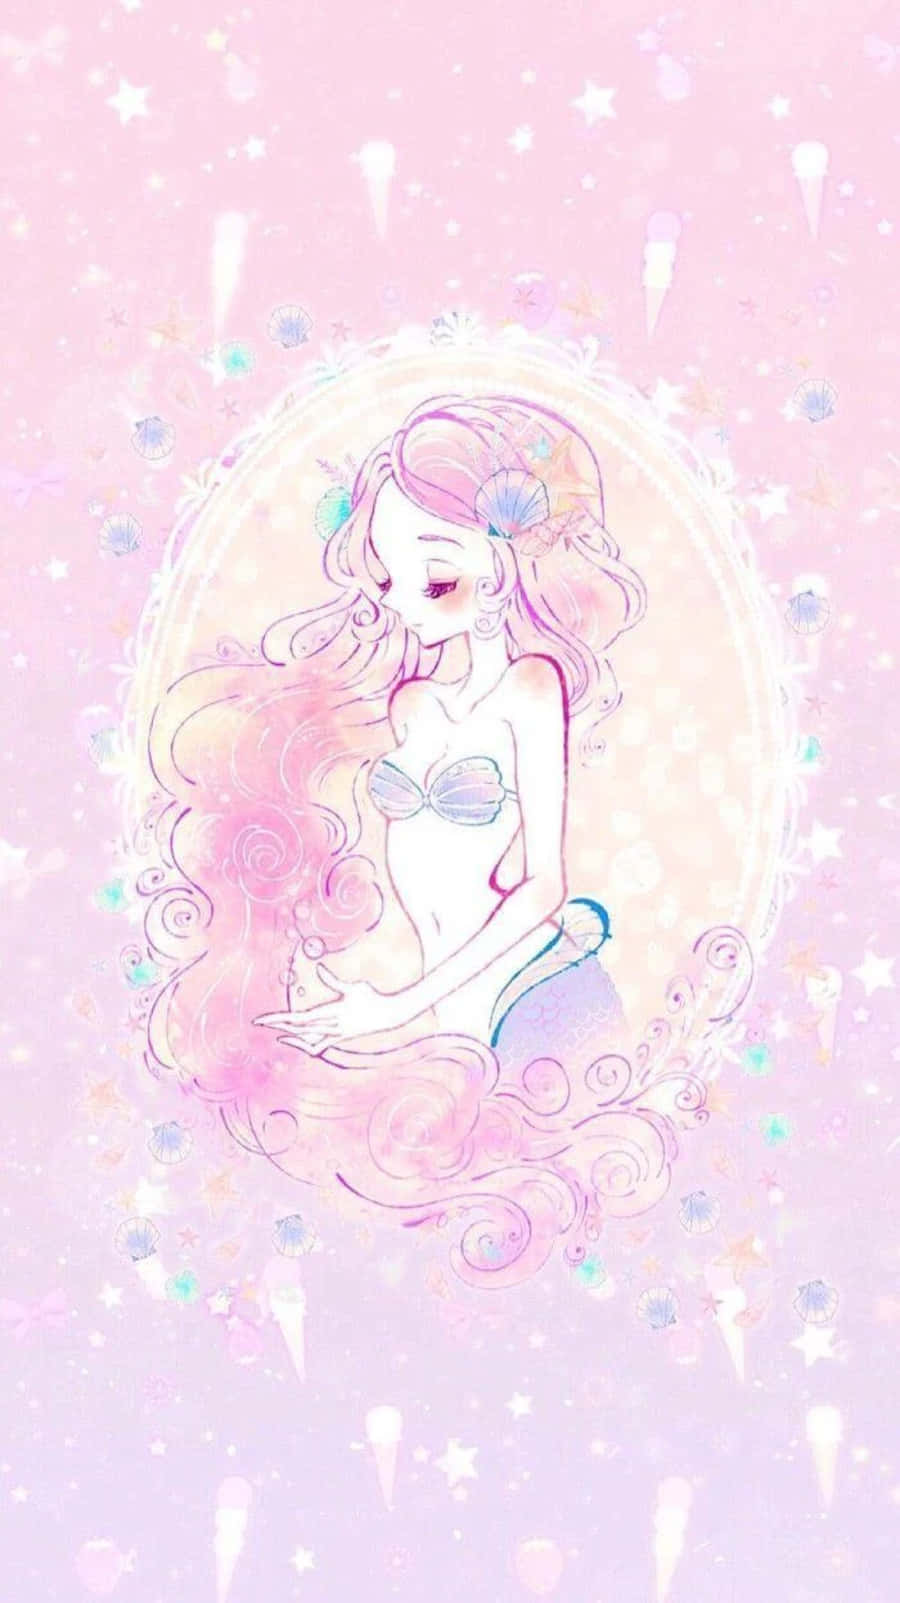 Cute Kawaii Mermaid in a Magical Sea Adventure Wallpaper